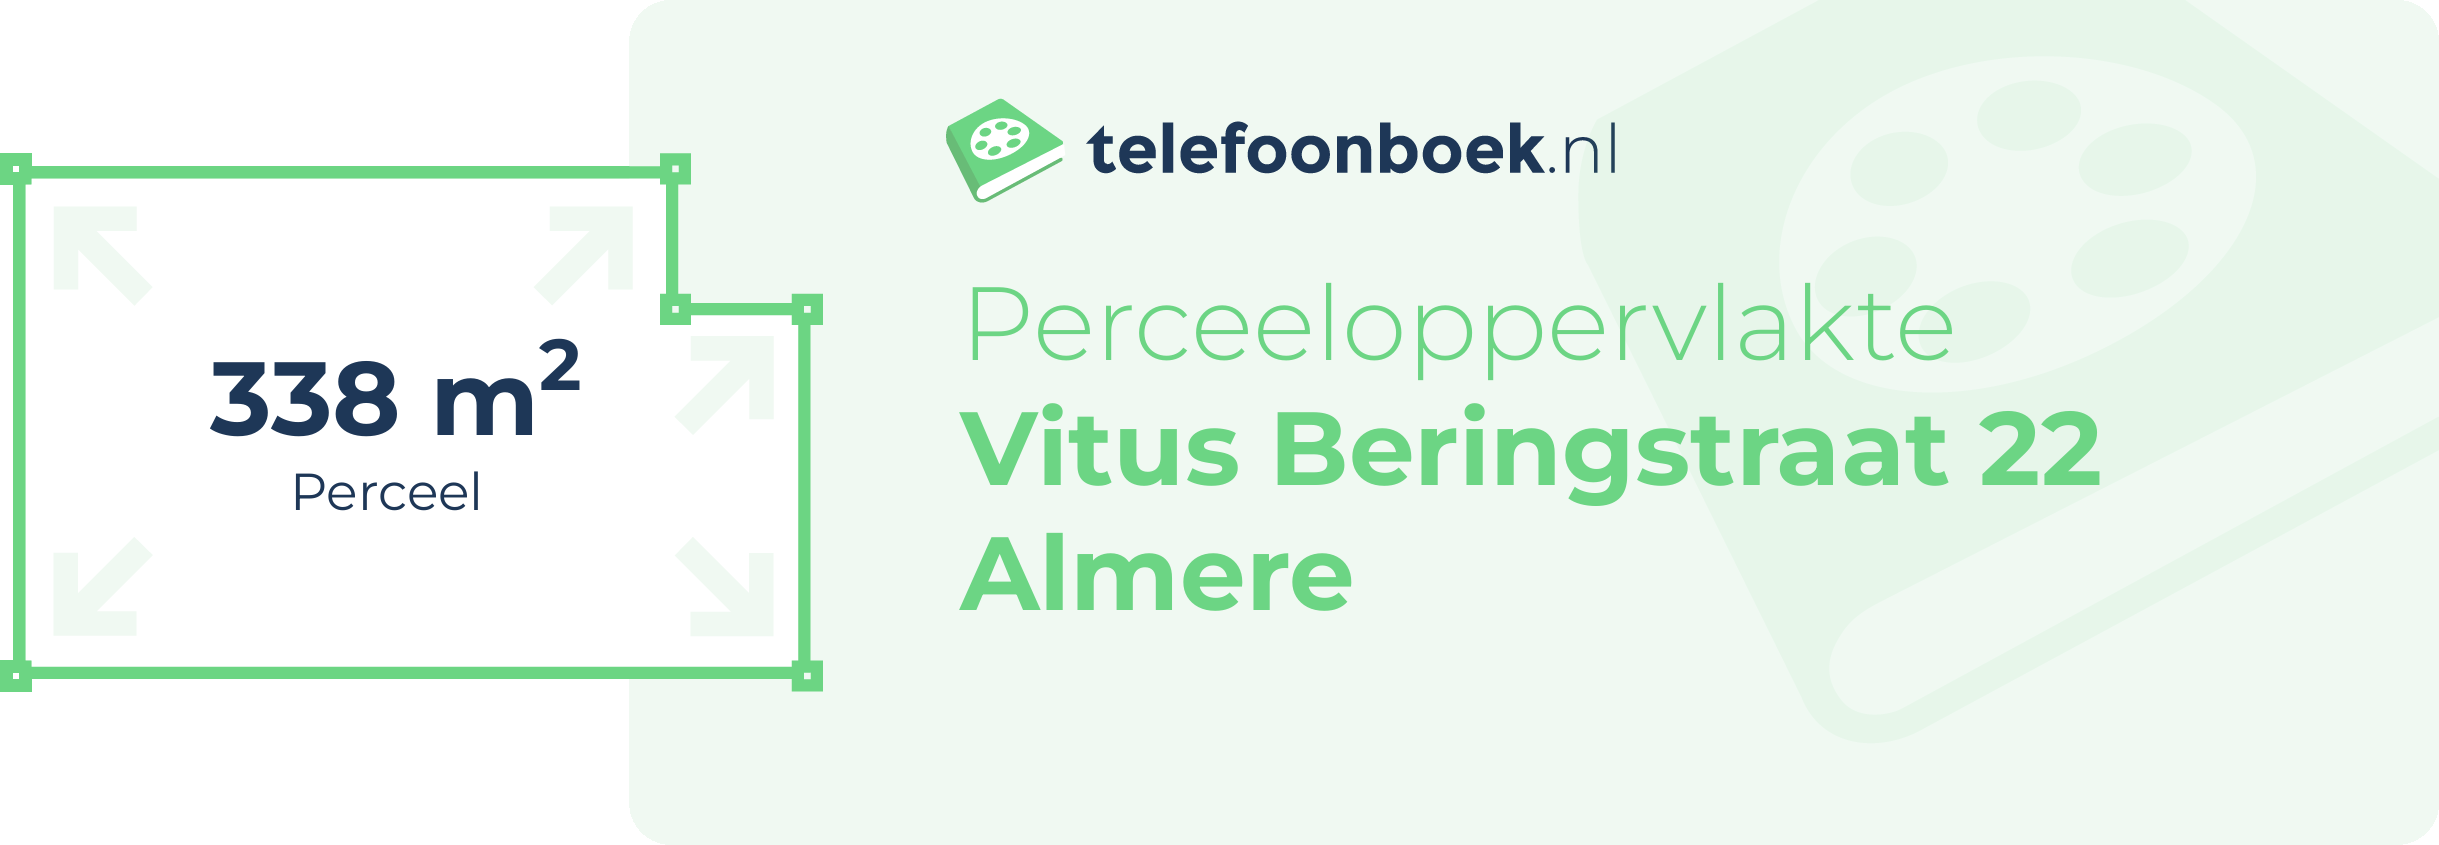 Perceeloppervlakte Vitus Beringstraat 22 Almere